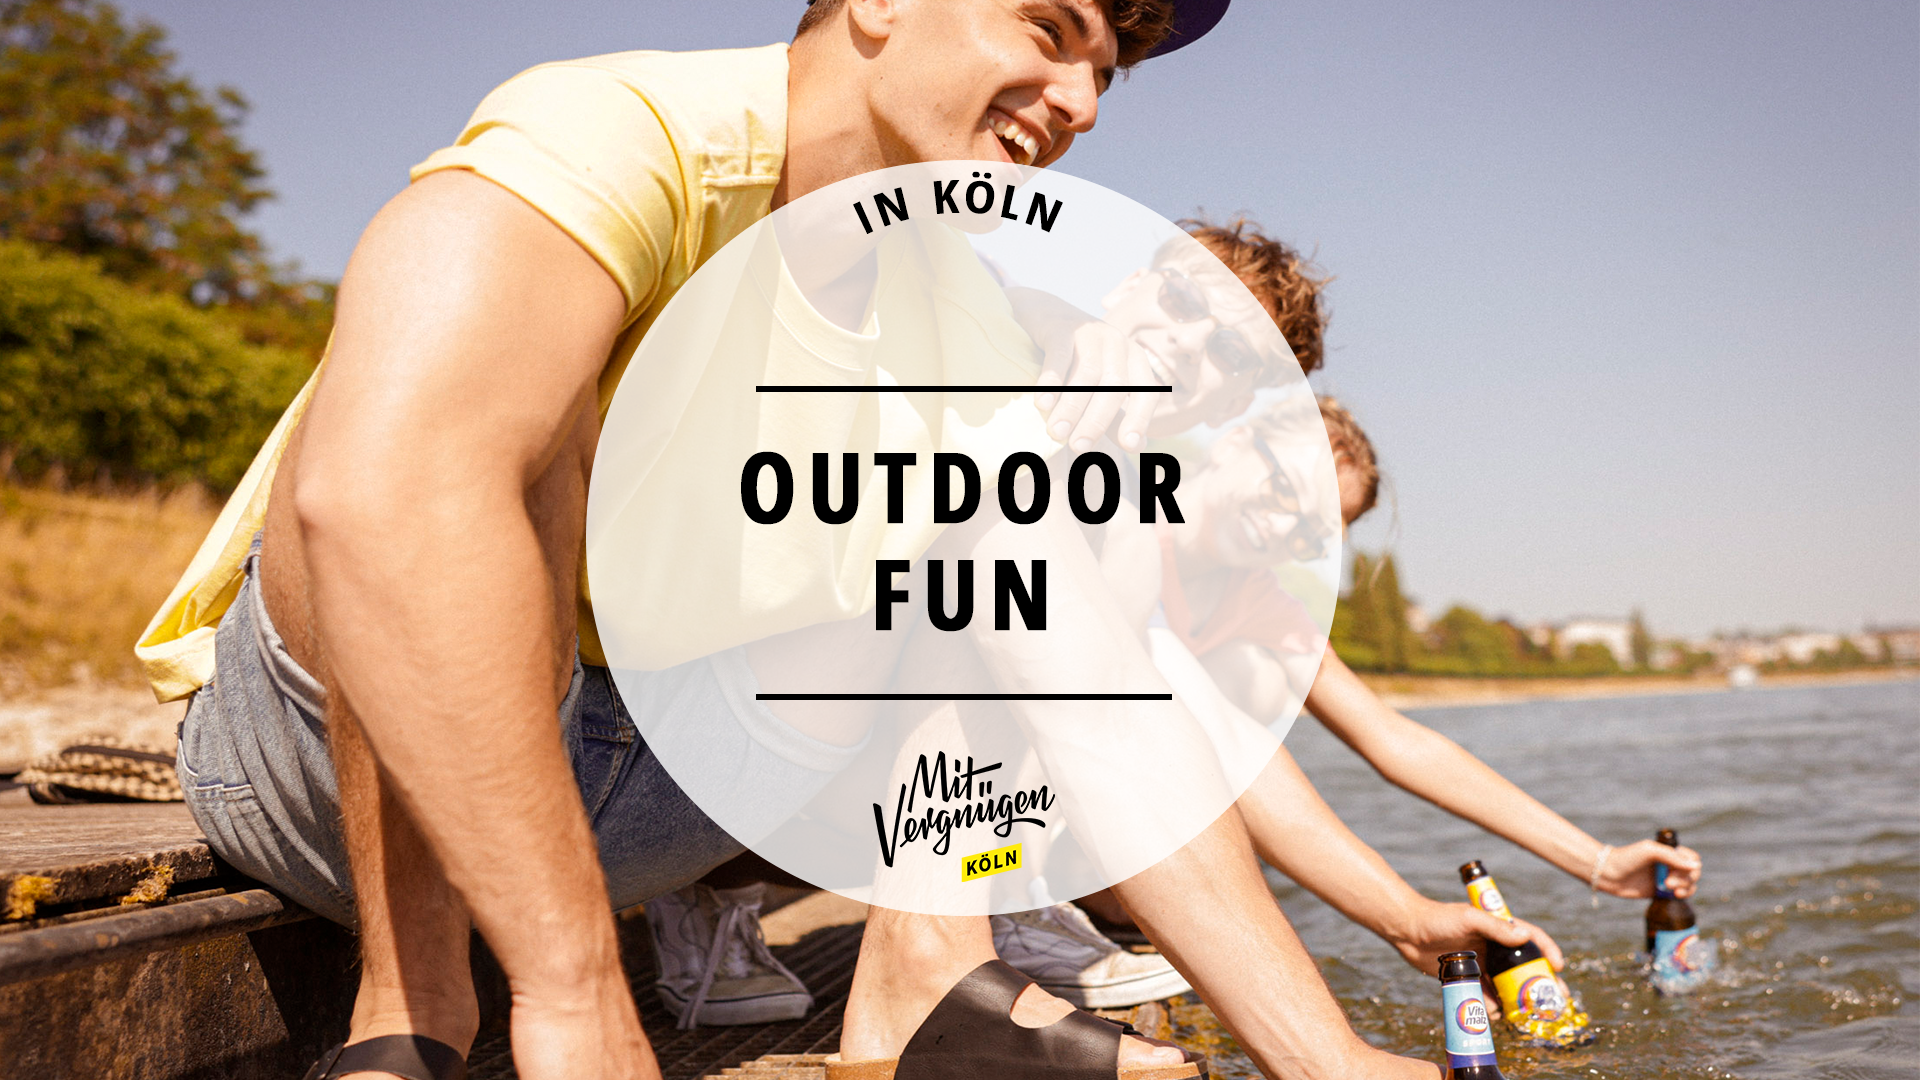 #11 coole Outdoor-Spots zum Chillen und Spaß haben im Sommer